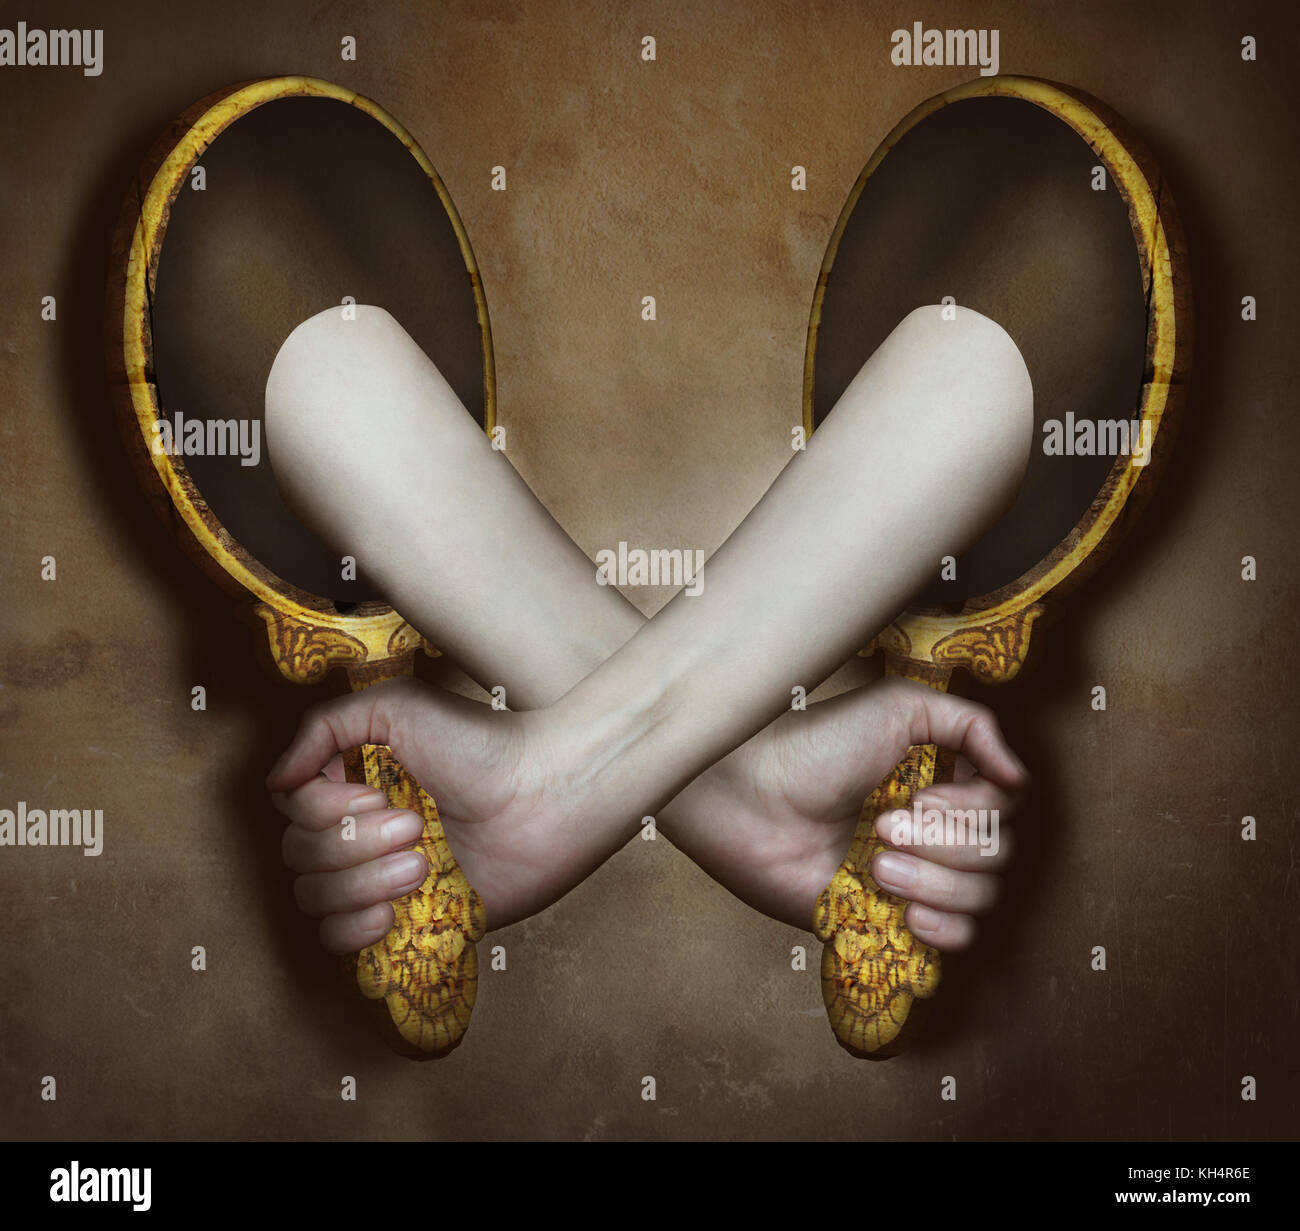 Surreale Bild stellt zwei Arme und Hände aus zwei Spiegel, die sich gegenseitig unterstützen Stockfoto